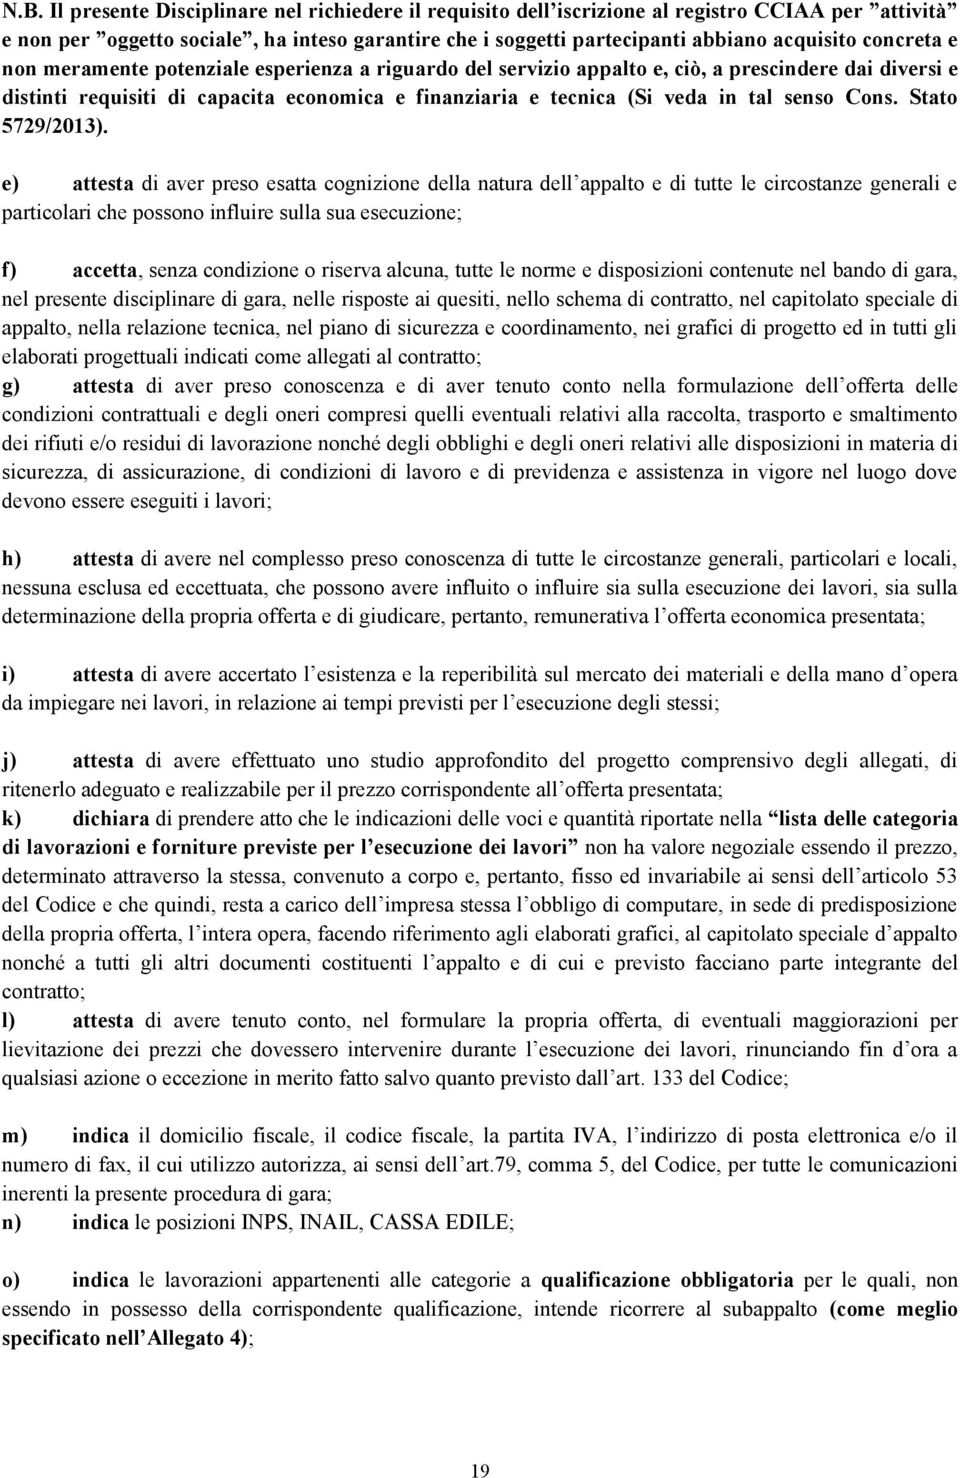 senso Cons. Stato 5729/2013).